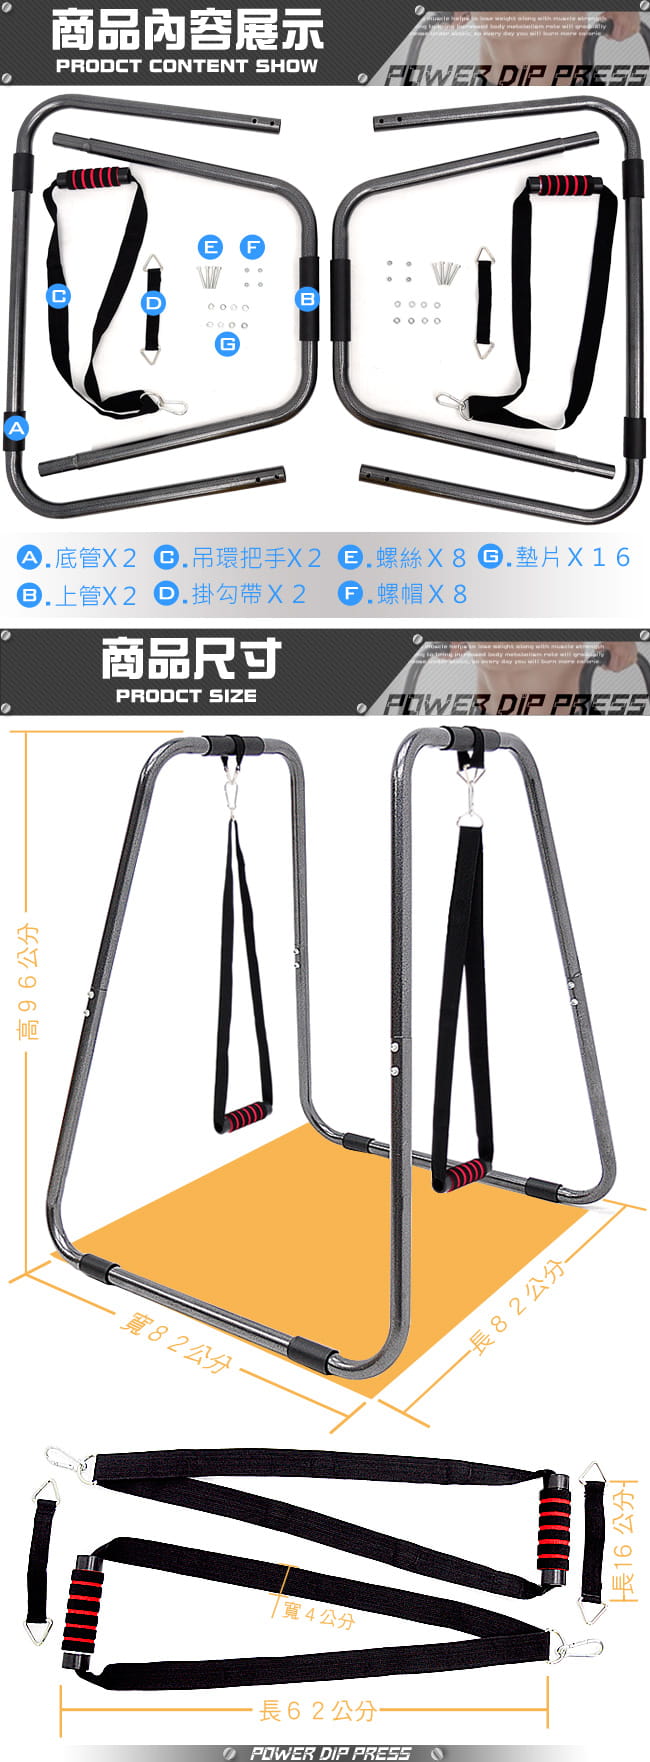 【SAN SPORTS】連體雙槓鞍馬架+懸吊訓練繩 9